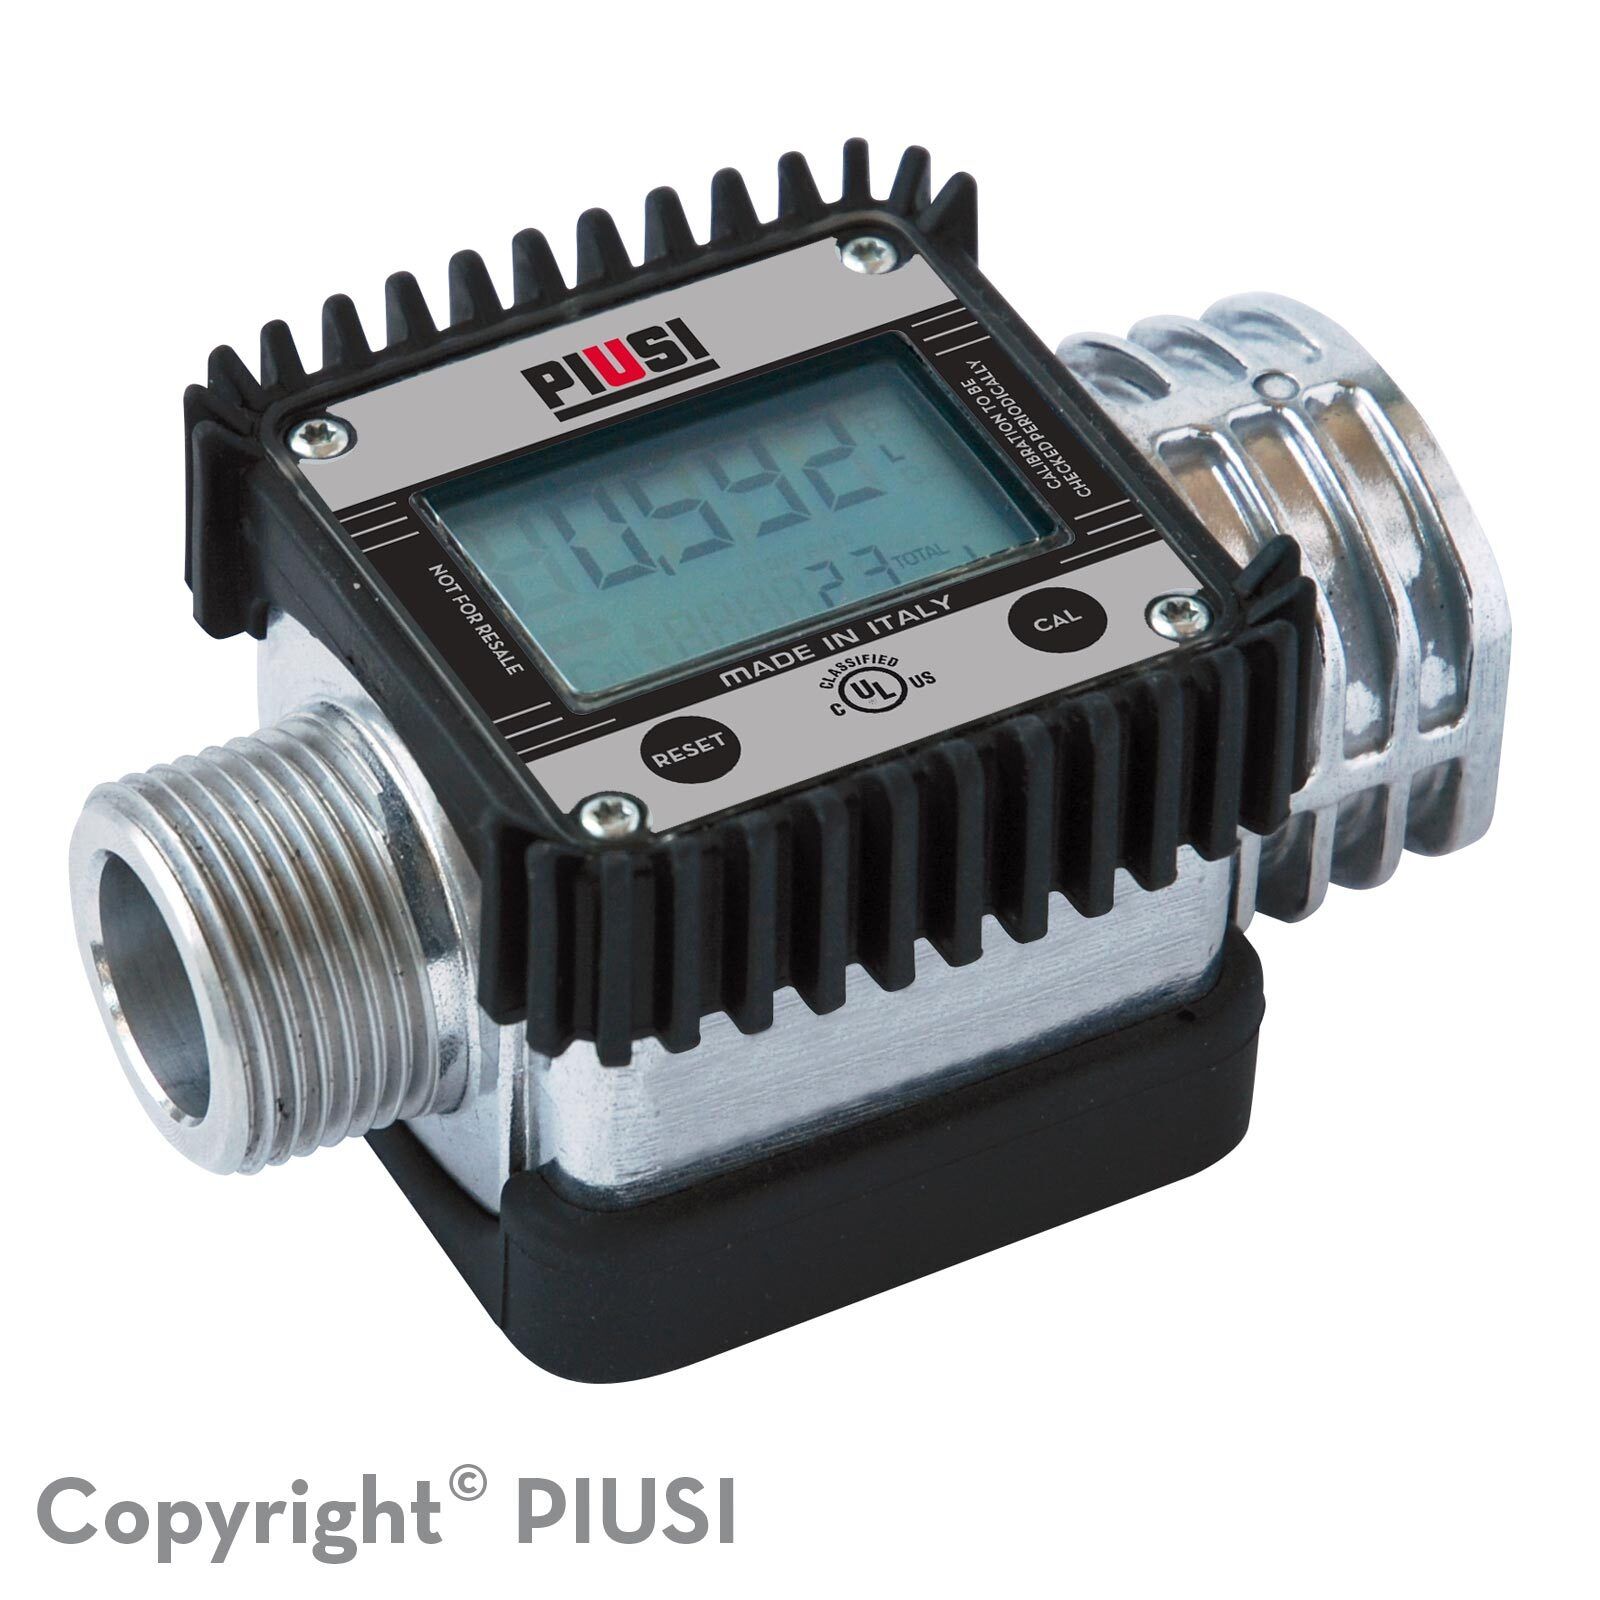 K24 atex/iecex - débitmètre électronique carburant - piusi spa - liquide : essence, gasoil, kérosène - pression d'éclatement : 100 bars_0